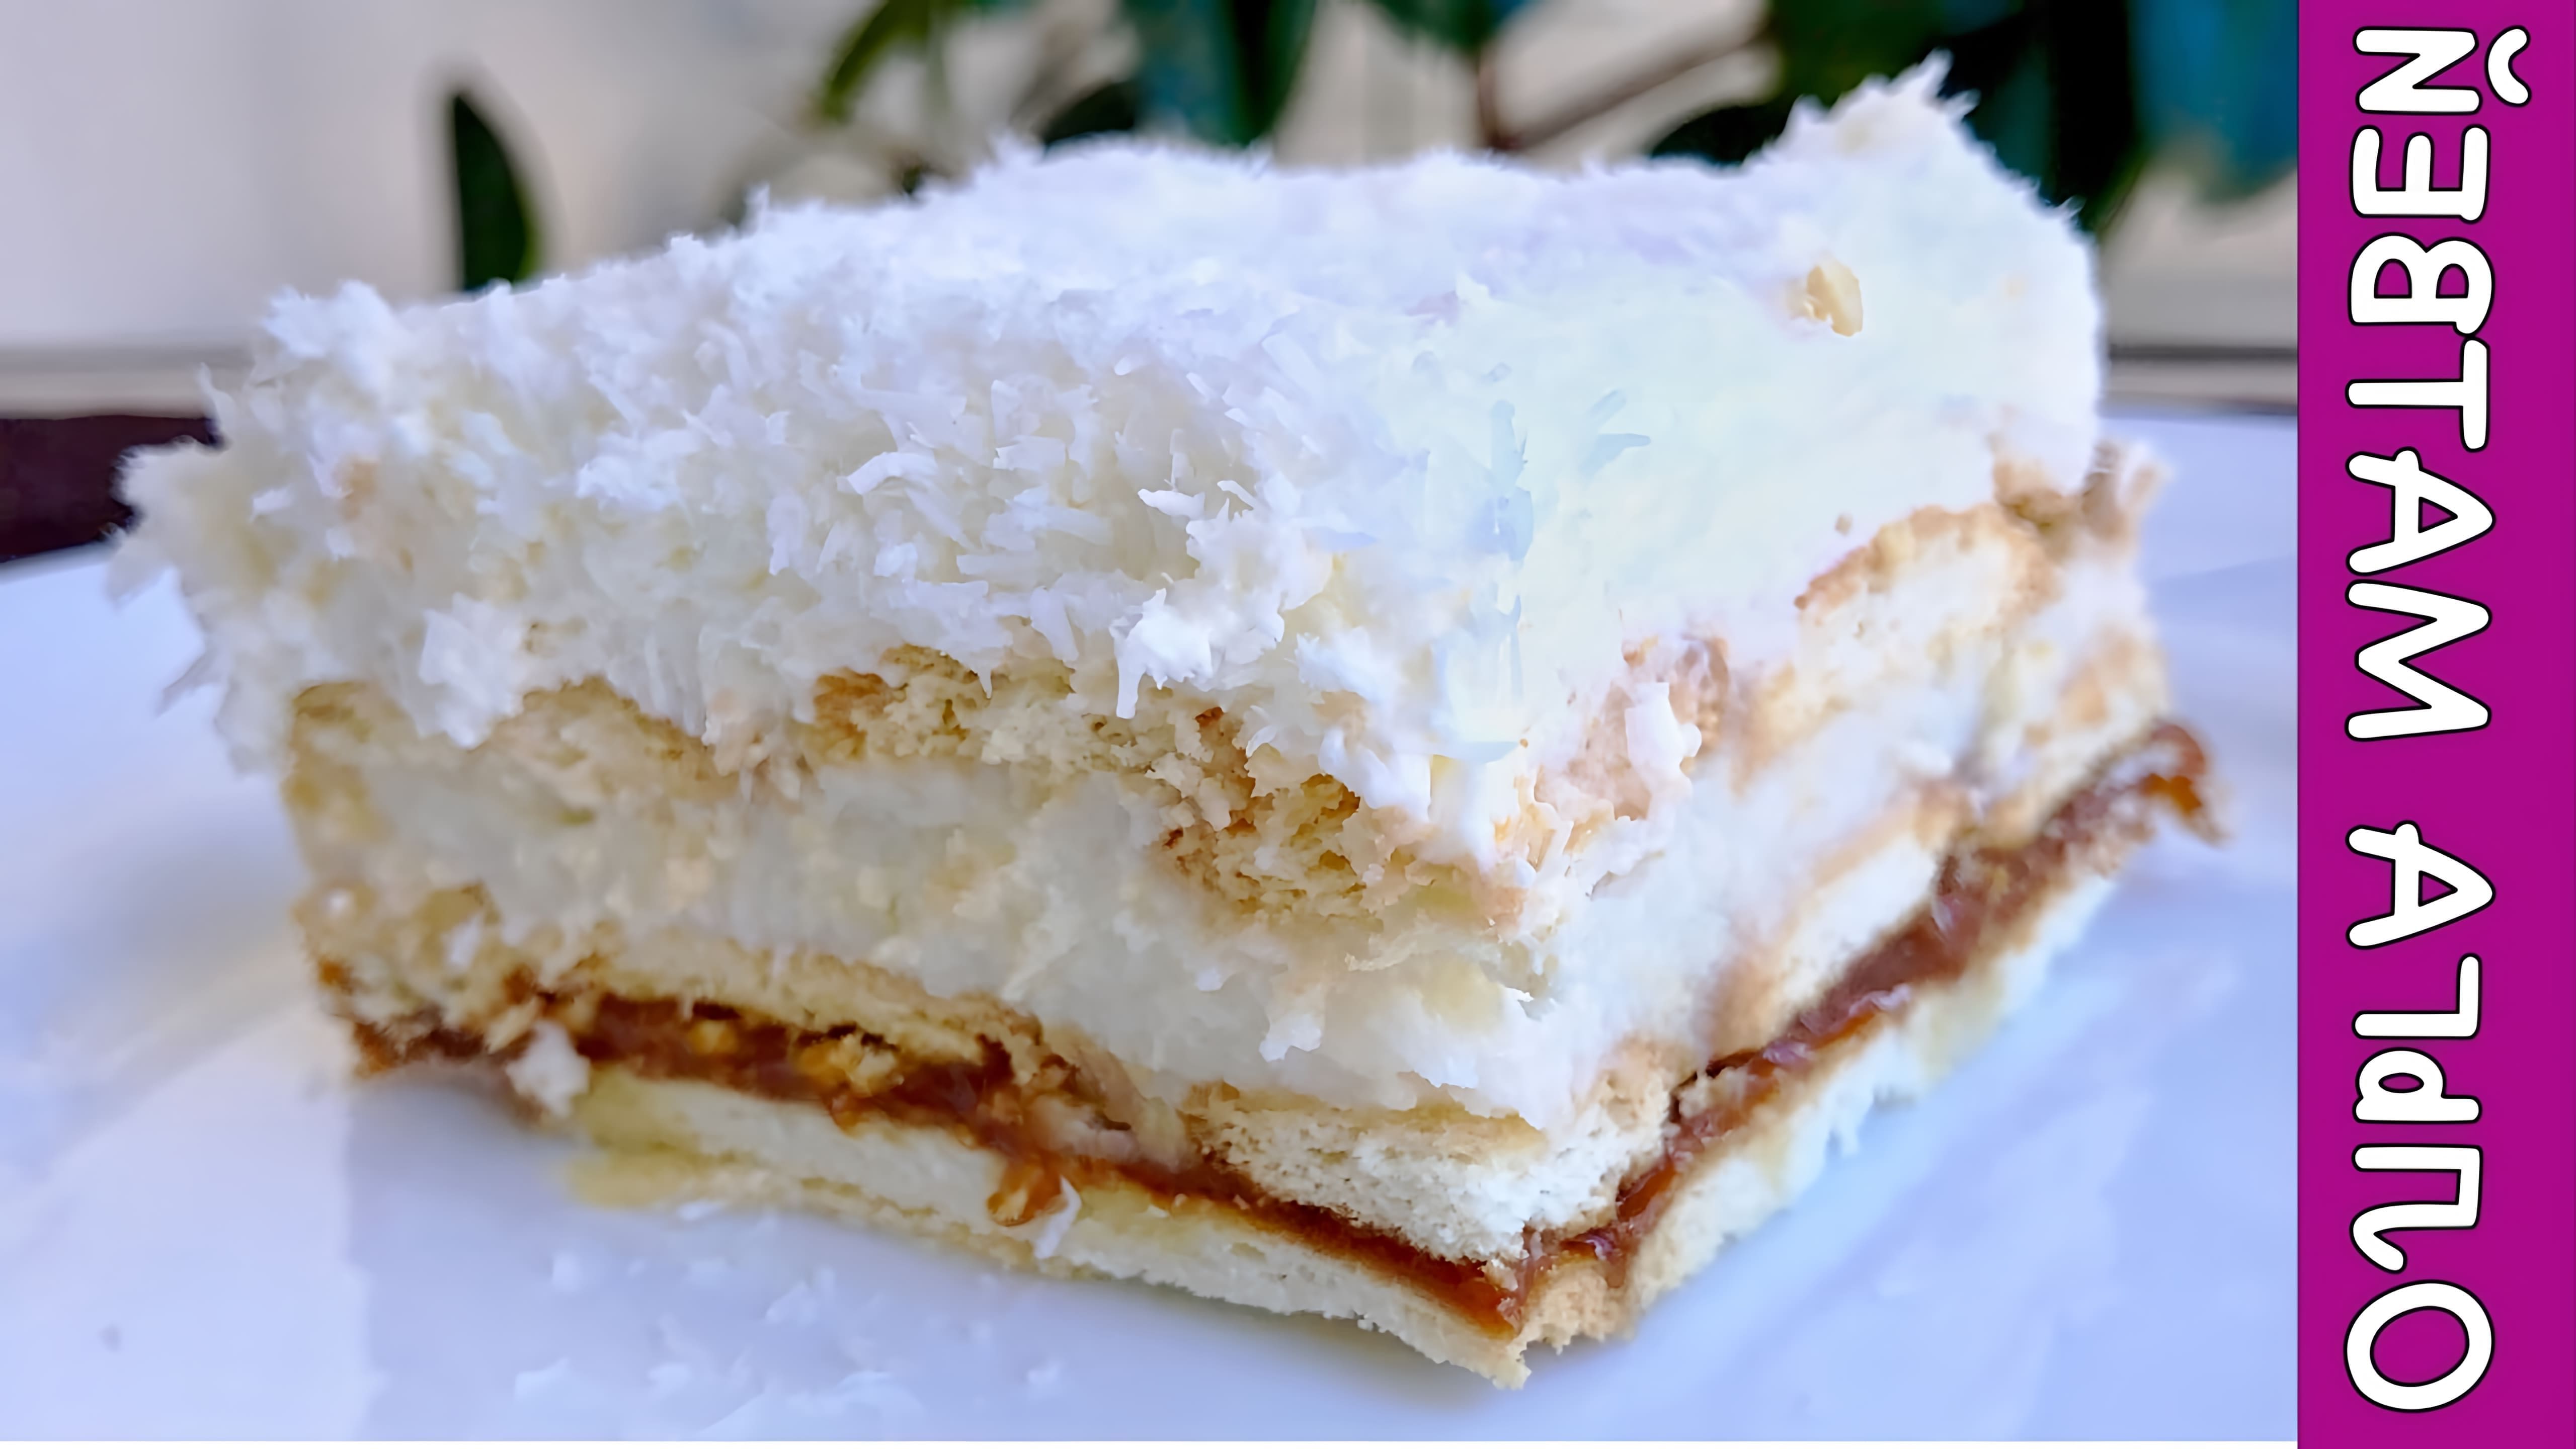 В этом видео Ольга Матвей показывает, как приготовить торт "Рафаэлло" без выпечки